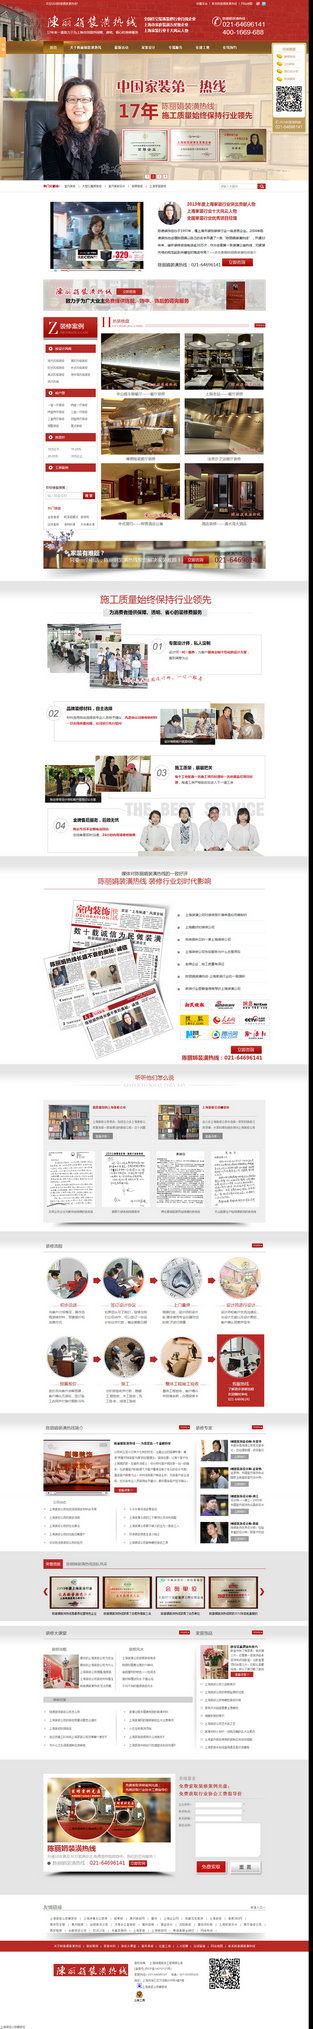 上海刚德装饰营销型网站案例展示